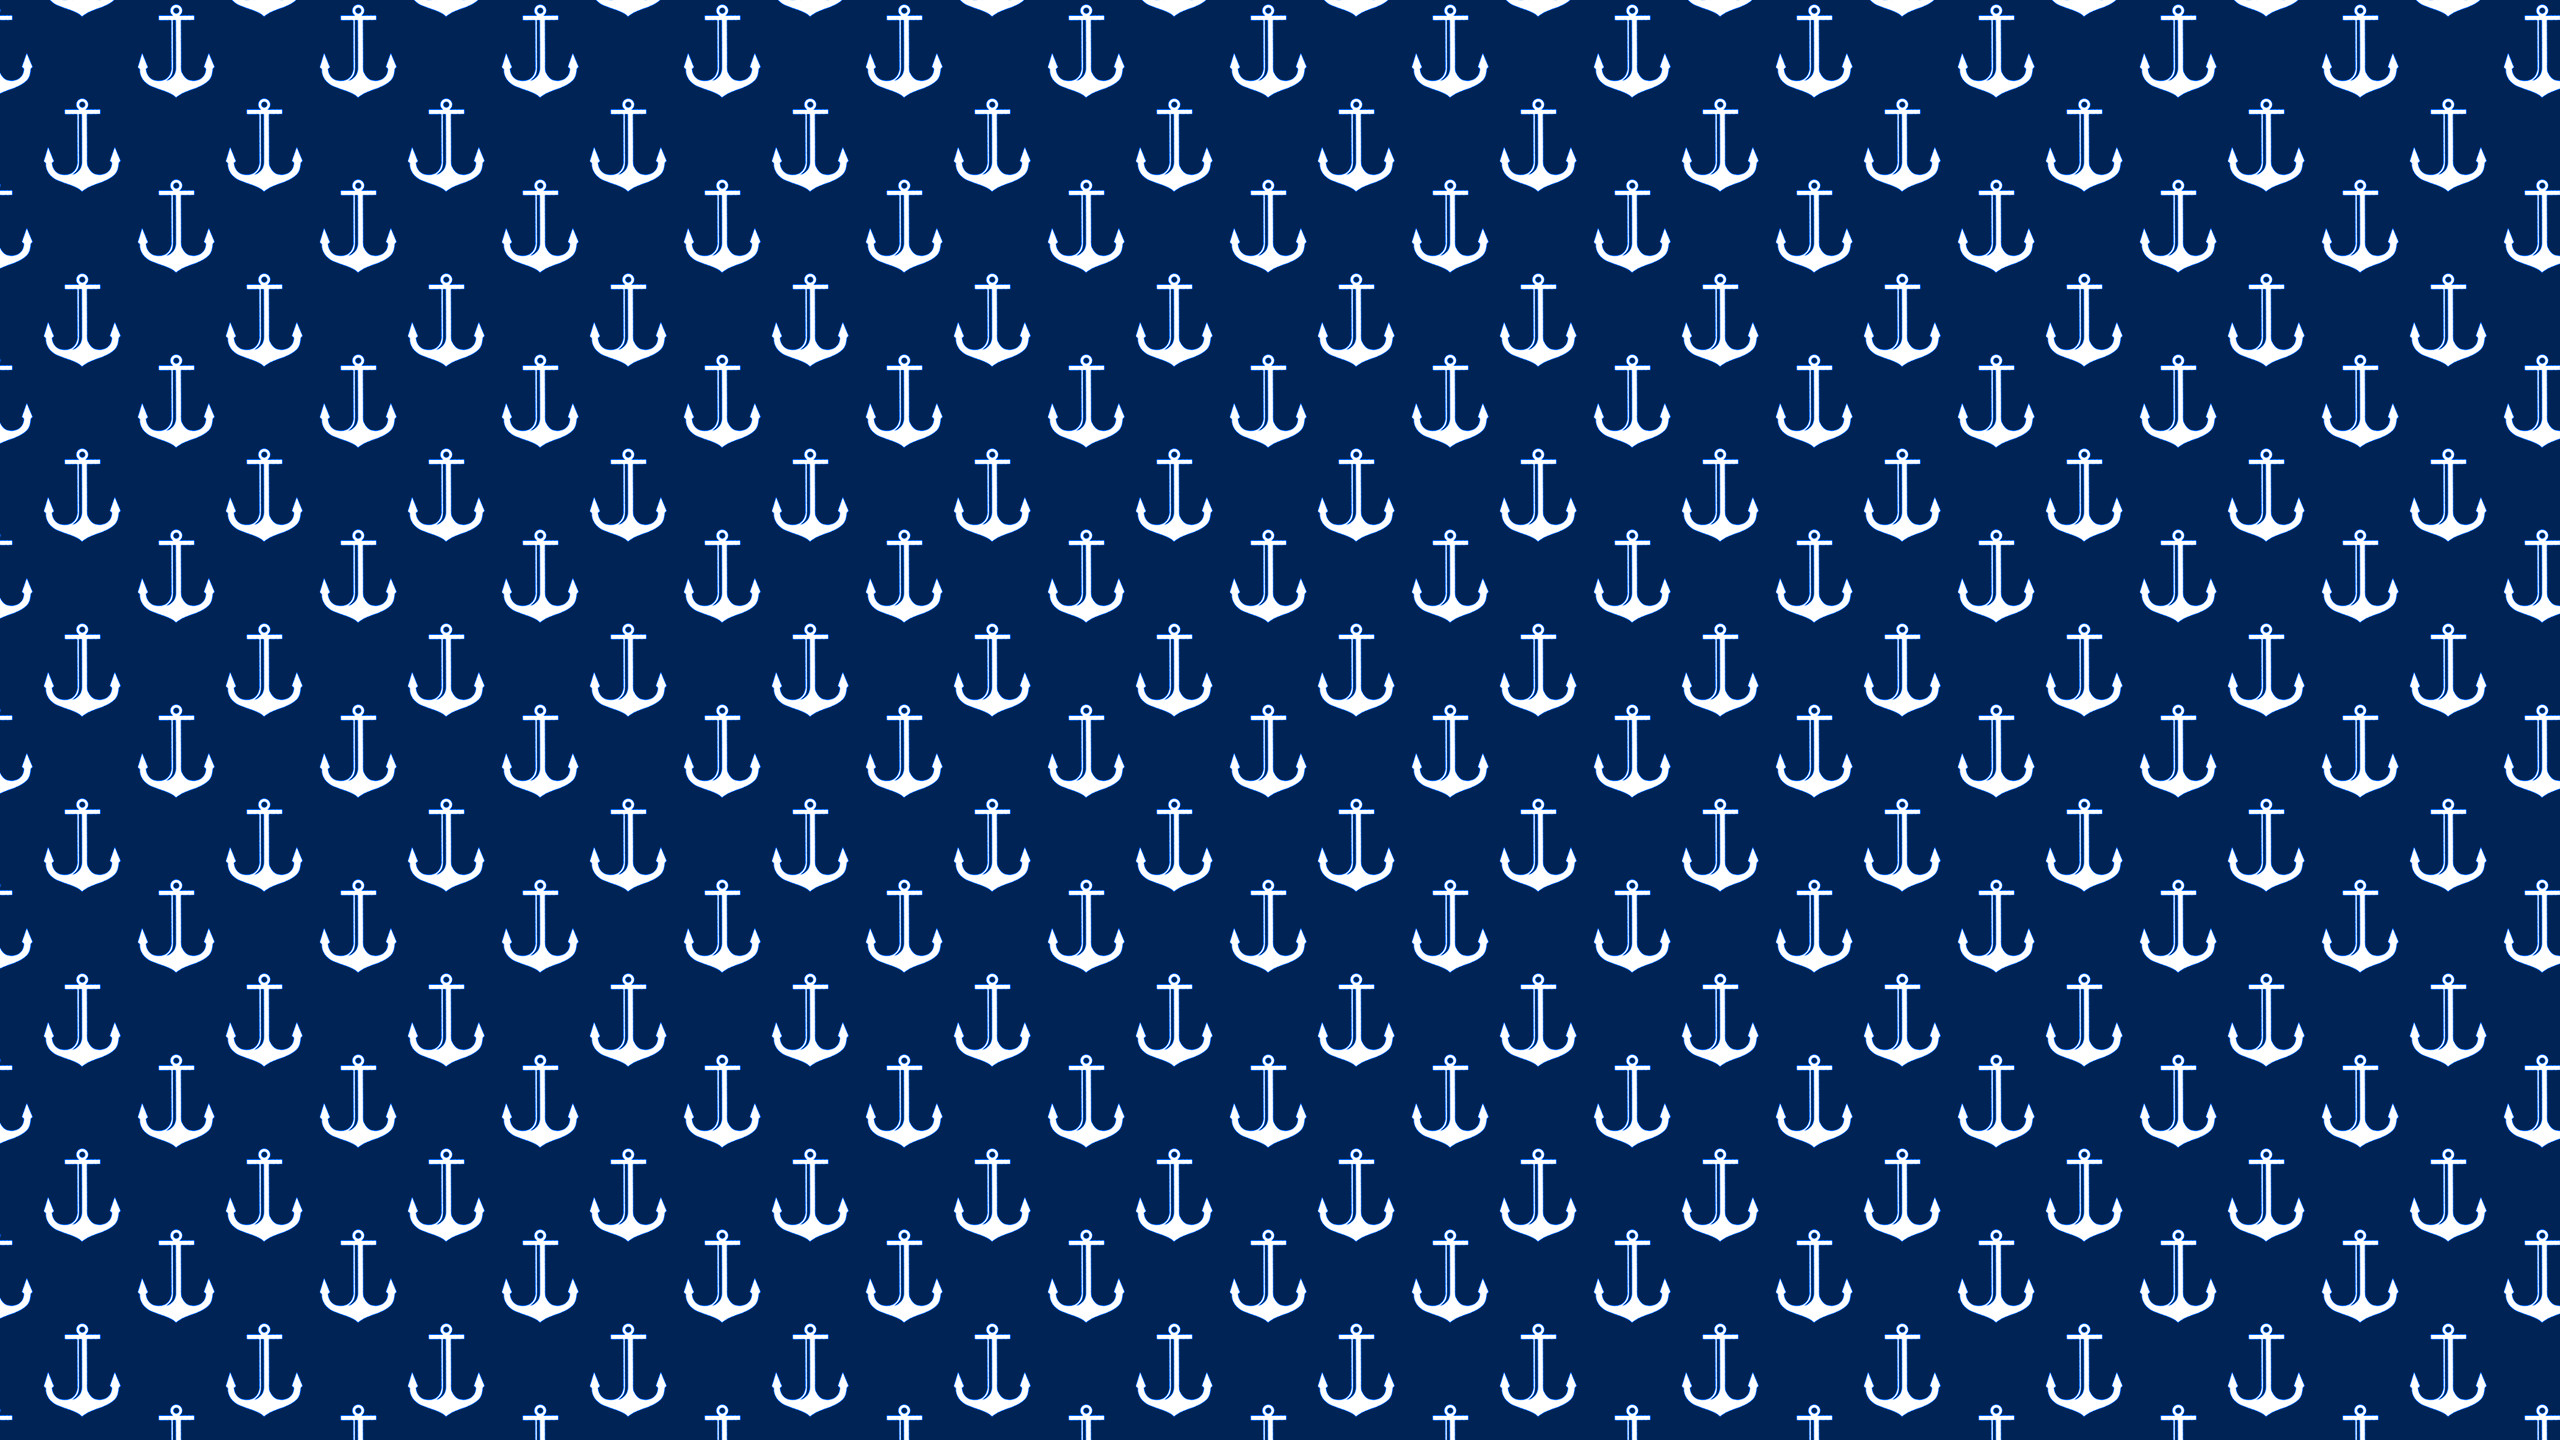 2560x1440 Wallpaper Anchors - WallpaperSafari